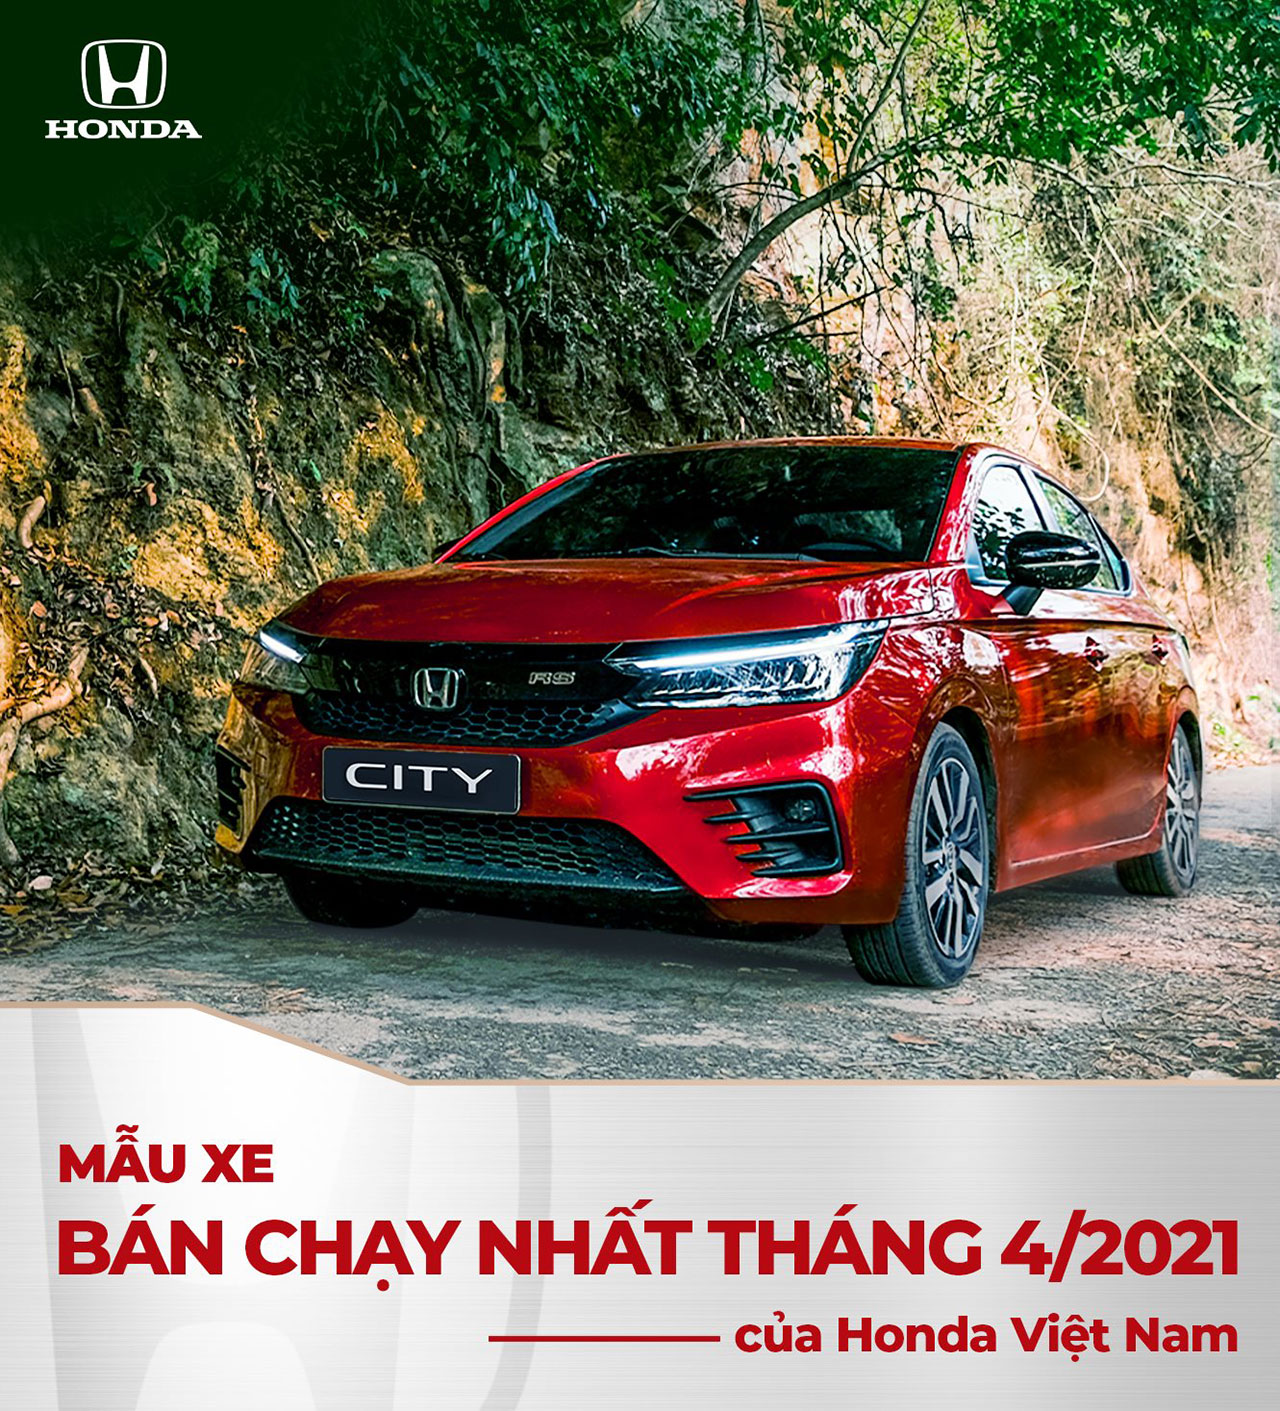 Honda City | Mẫu xe bán chạy nhất của Honda Việt Nam Tháng 4/2021